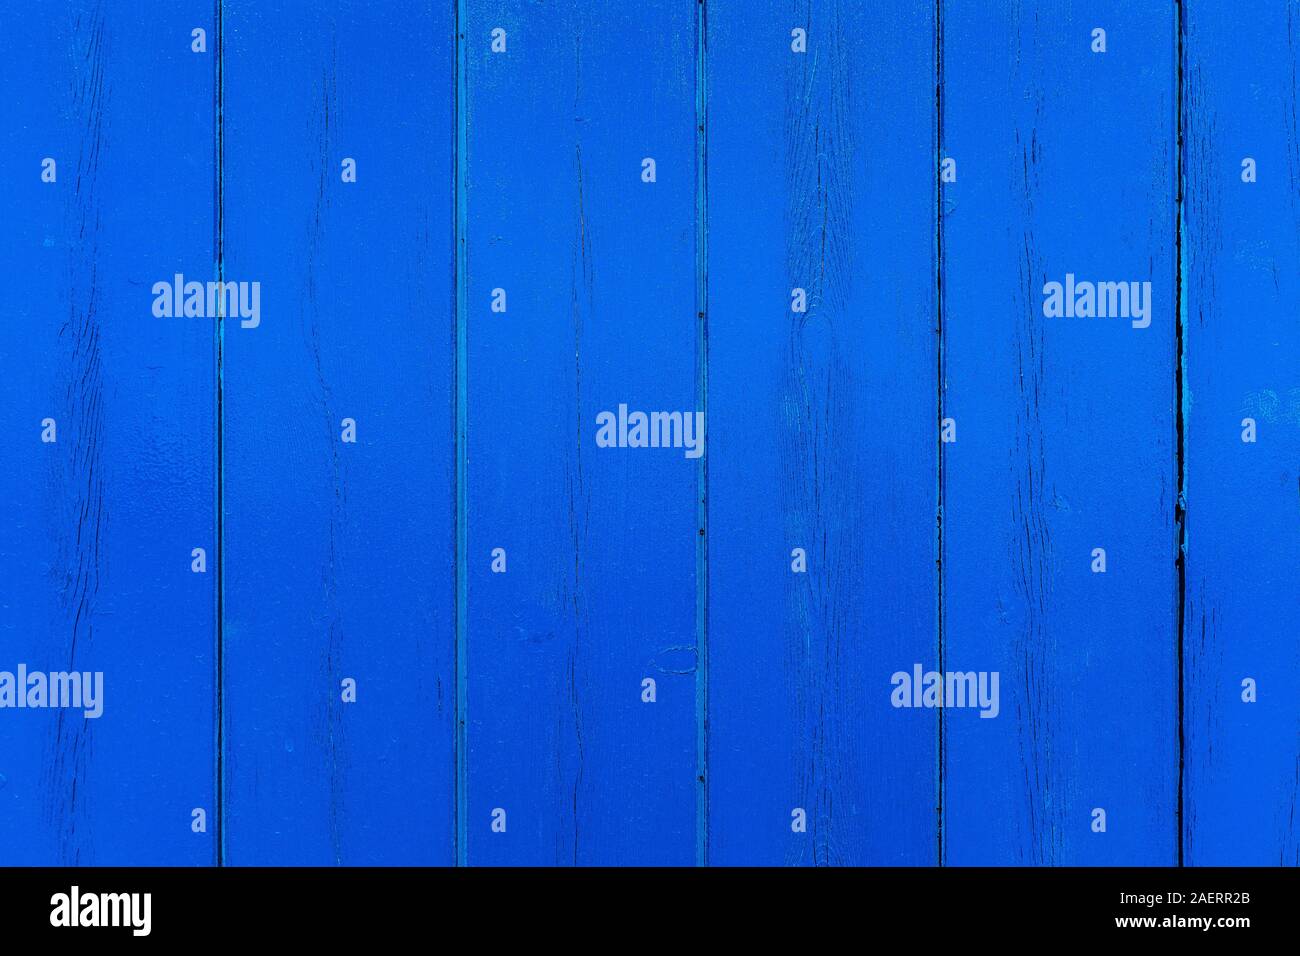 Nahaufnahme von einer äußeren Holzwand. Blau lackierten hölzernen Planken mit Knoten und vertikale Risse auf. Hintergründe und Texturen. Kopieren Sie Platz für Text. Stockfoto